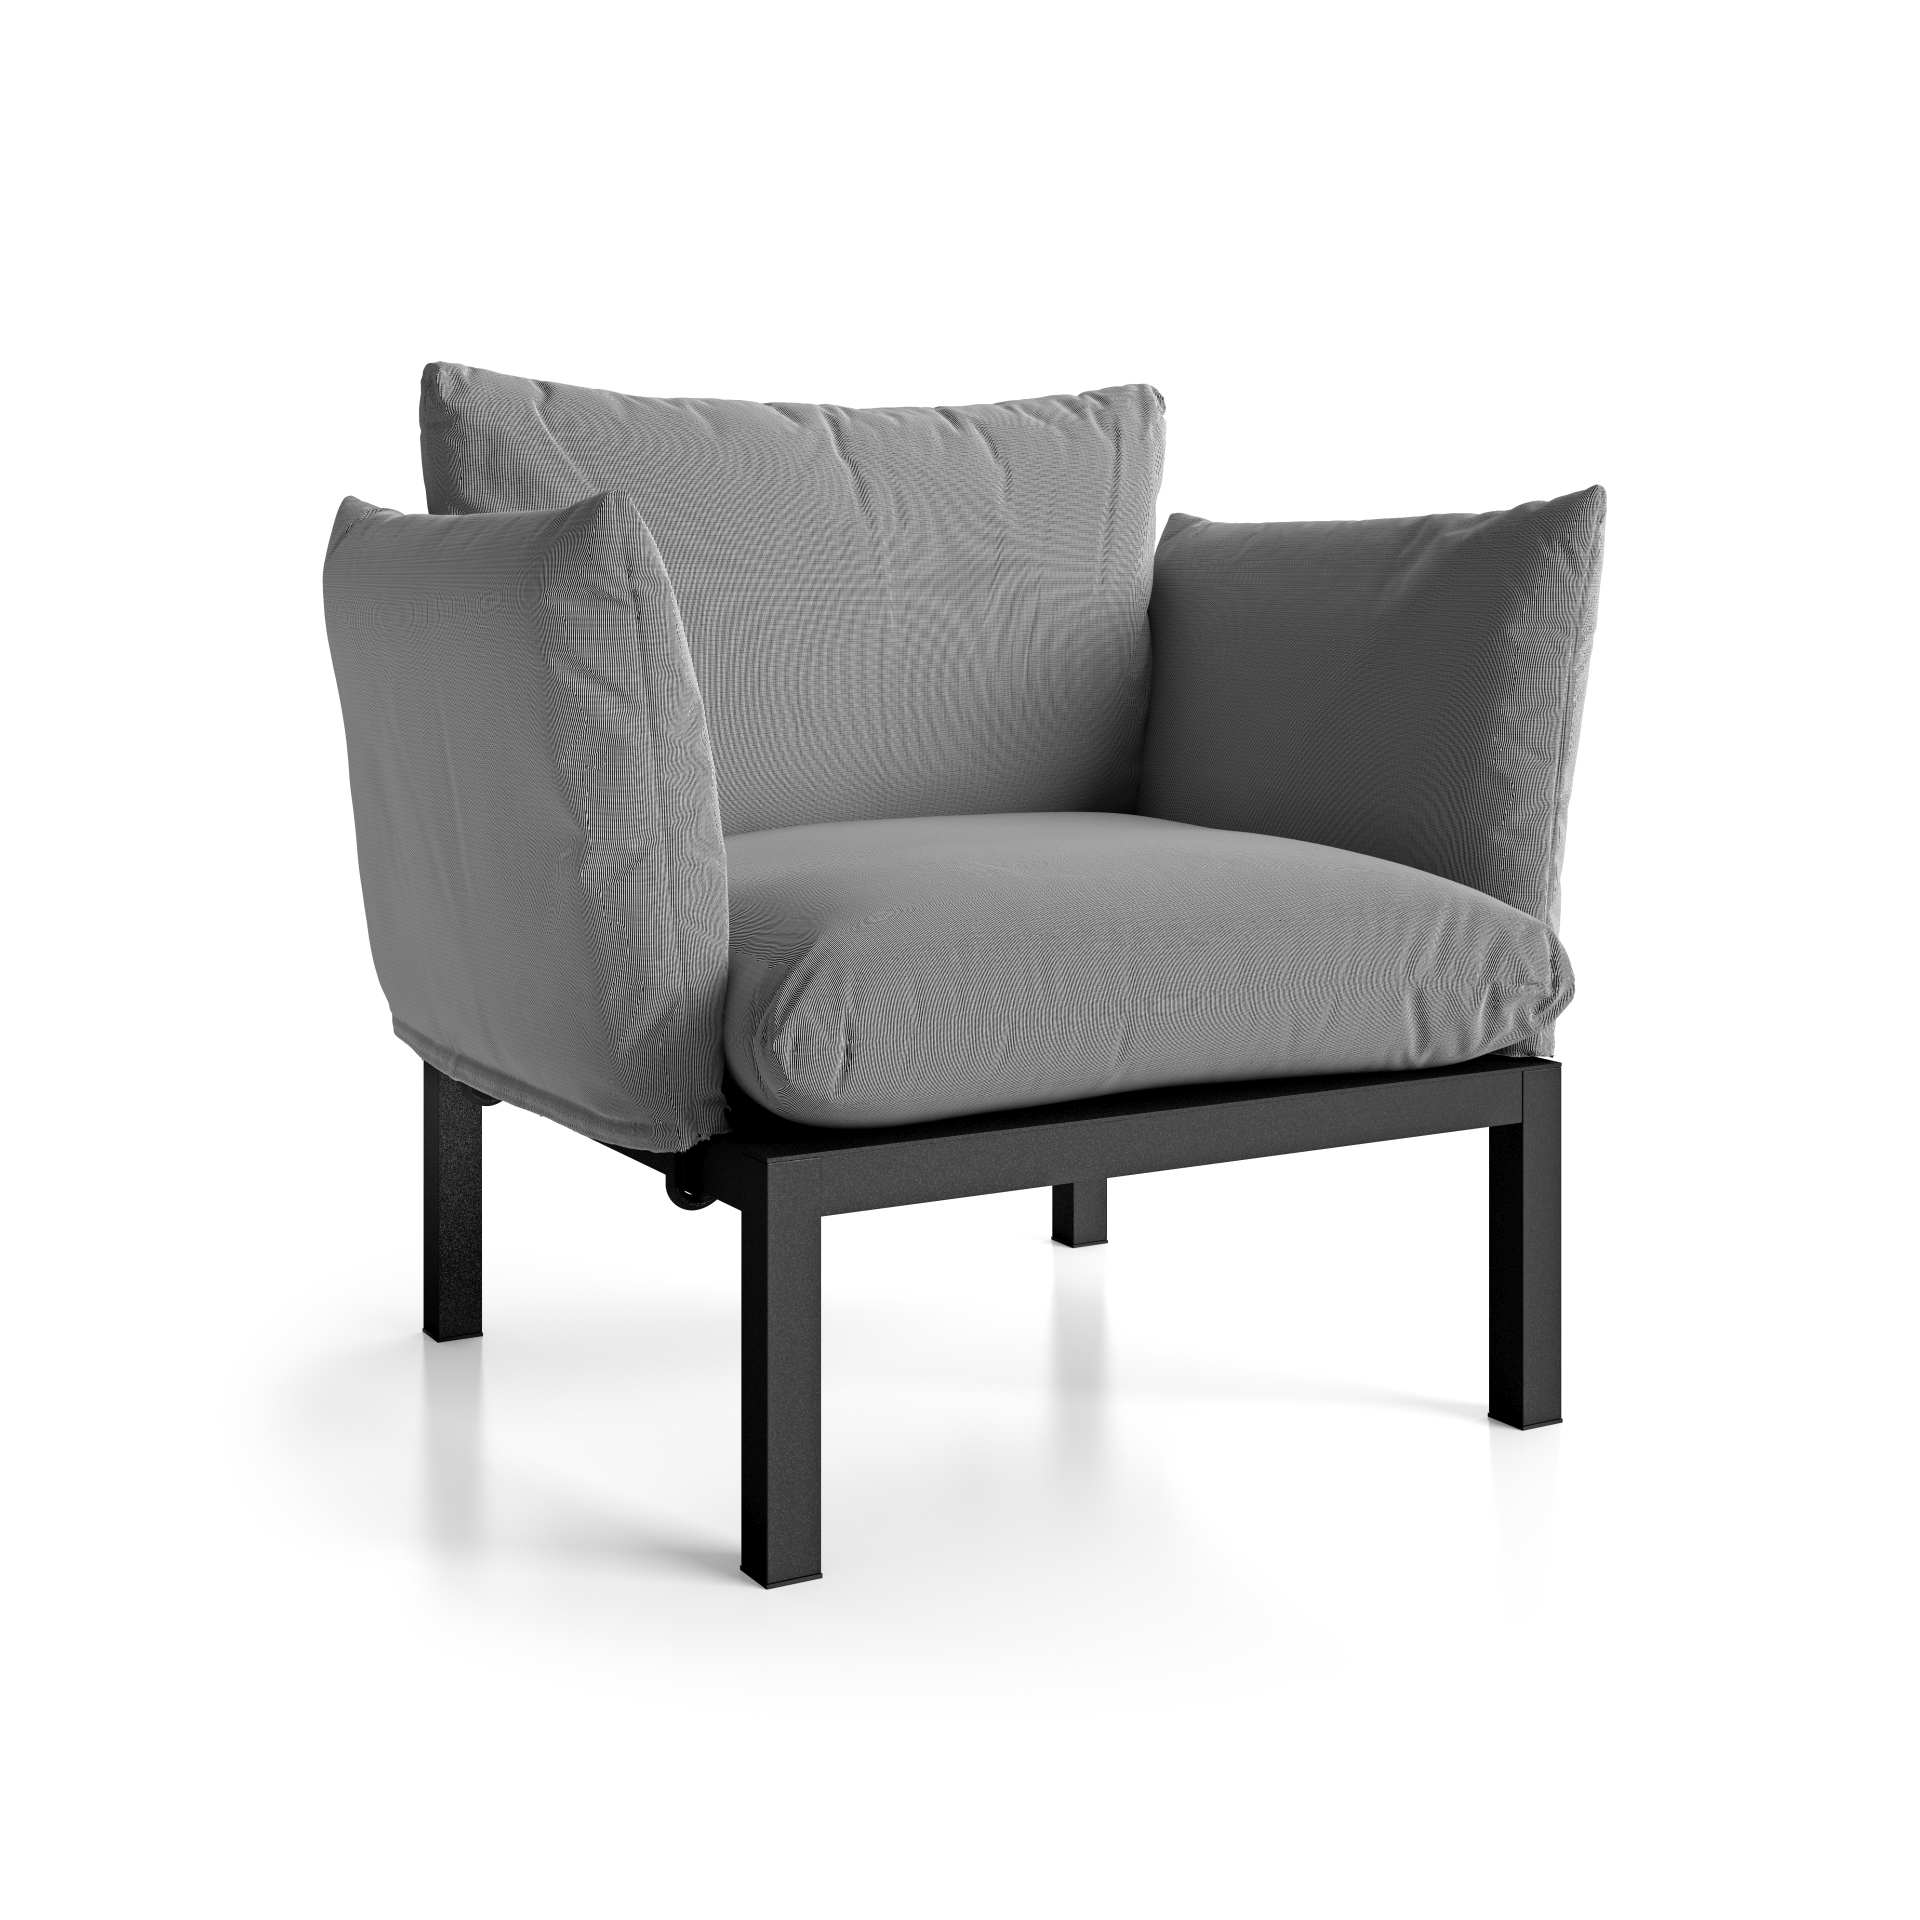 Der moderne Sessel Domino überzeugt mit seinem modernen Design. Er verfügt über ein Aluminium Gestell und ist somit perfekt für den Outdoor-Bereich einsetzbar. Designet wurde er von der Marke Jan Kurtz. Und hat die Farbkombination Gestell Schwarz und Bezu